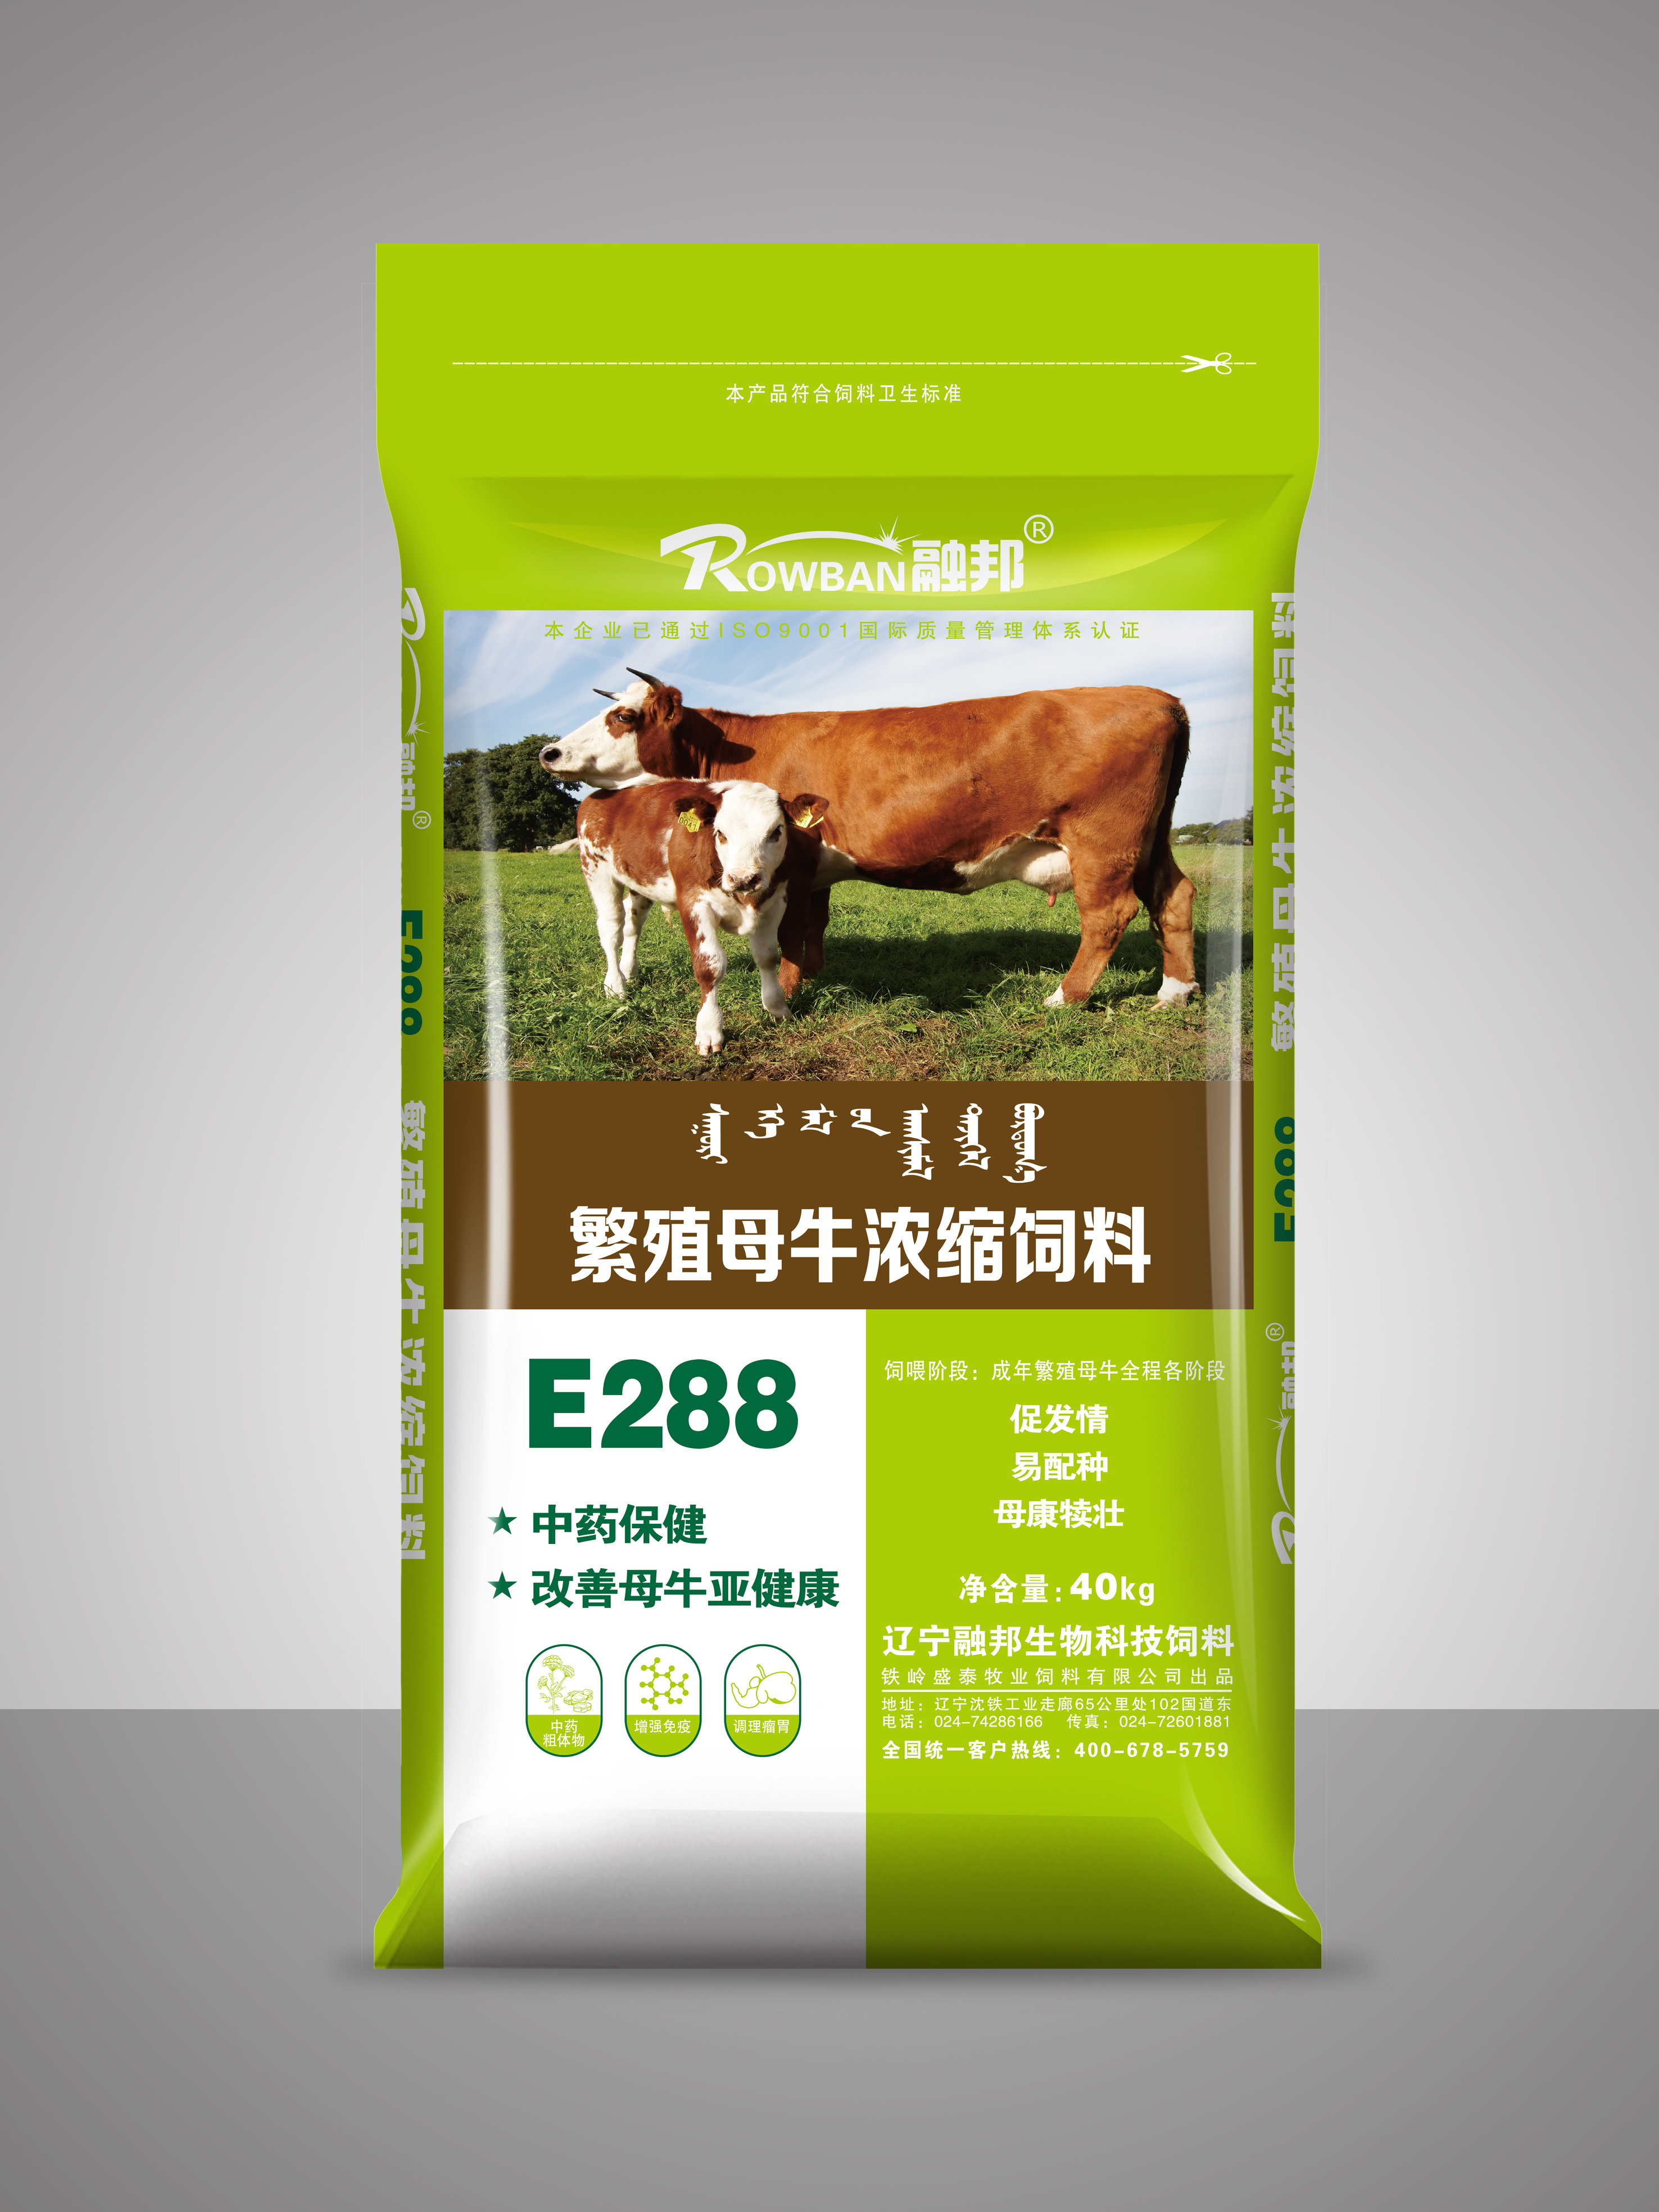 新品上市 繁殖母牛濃縮飼料--E288